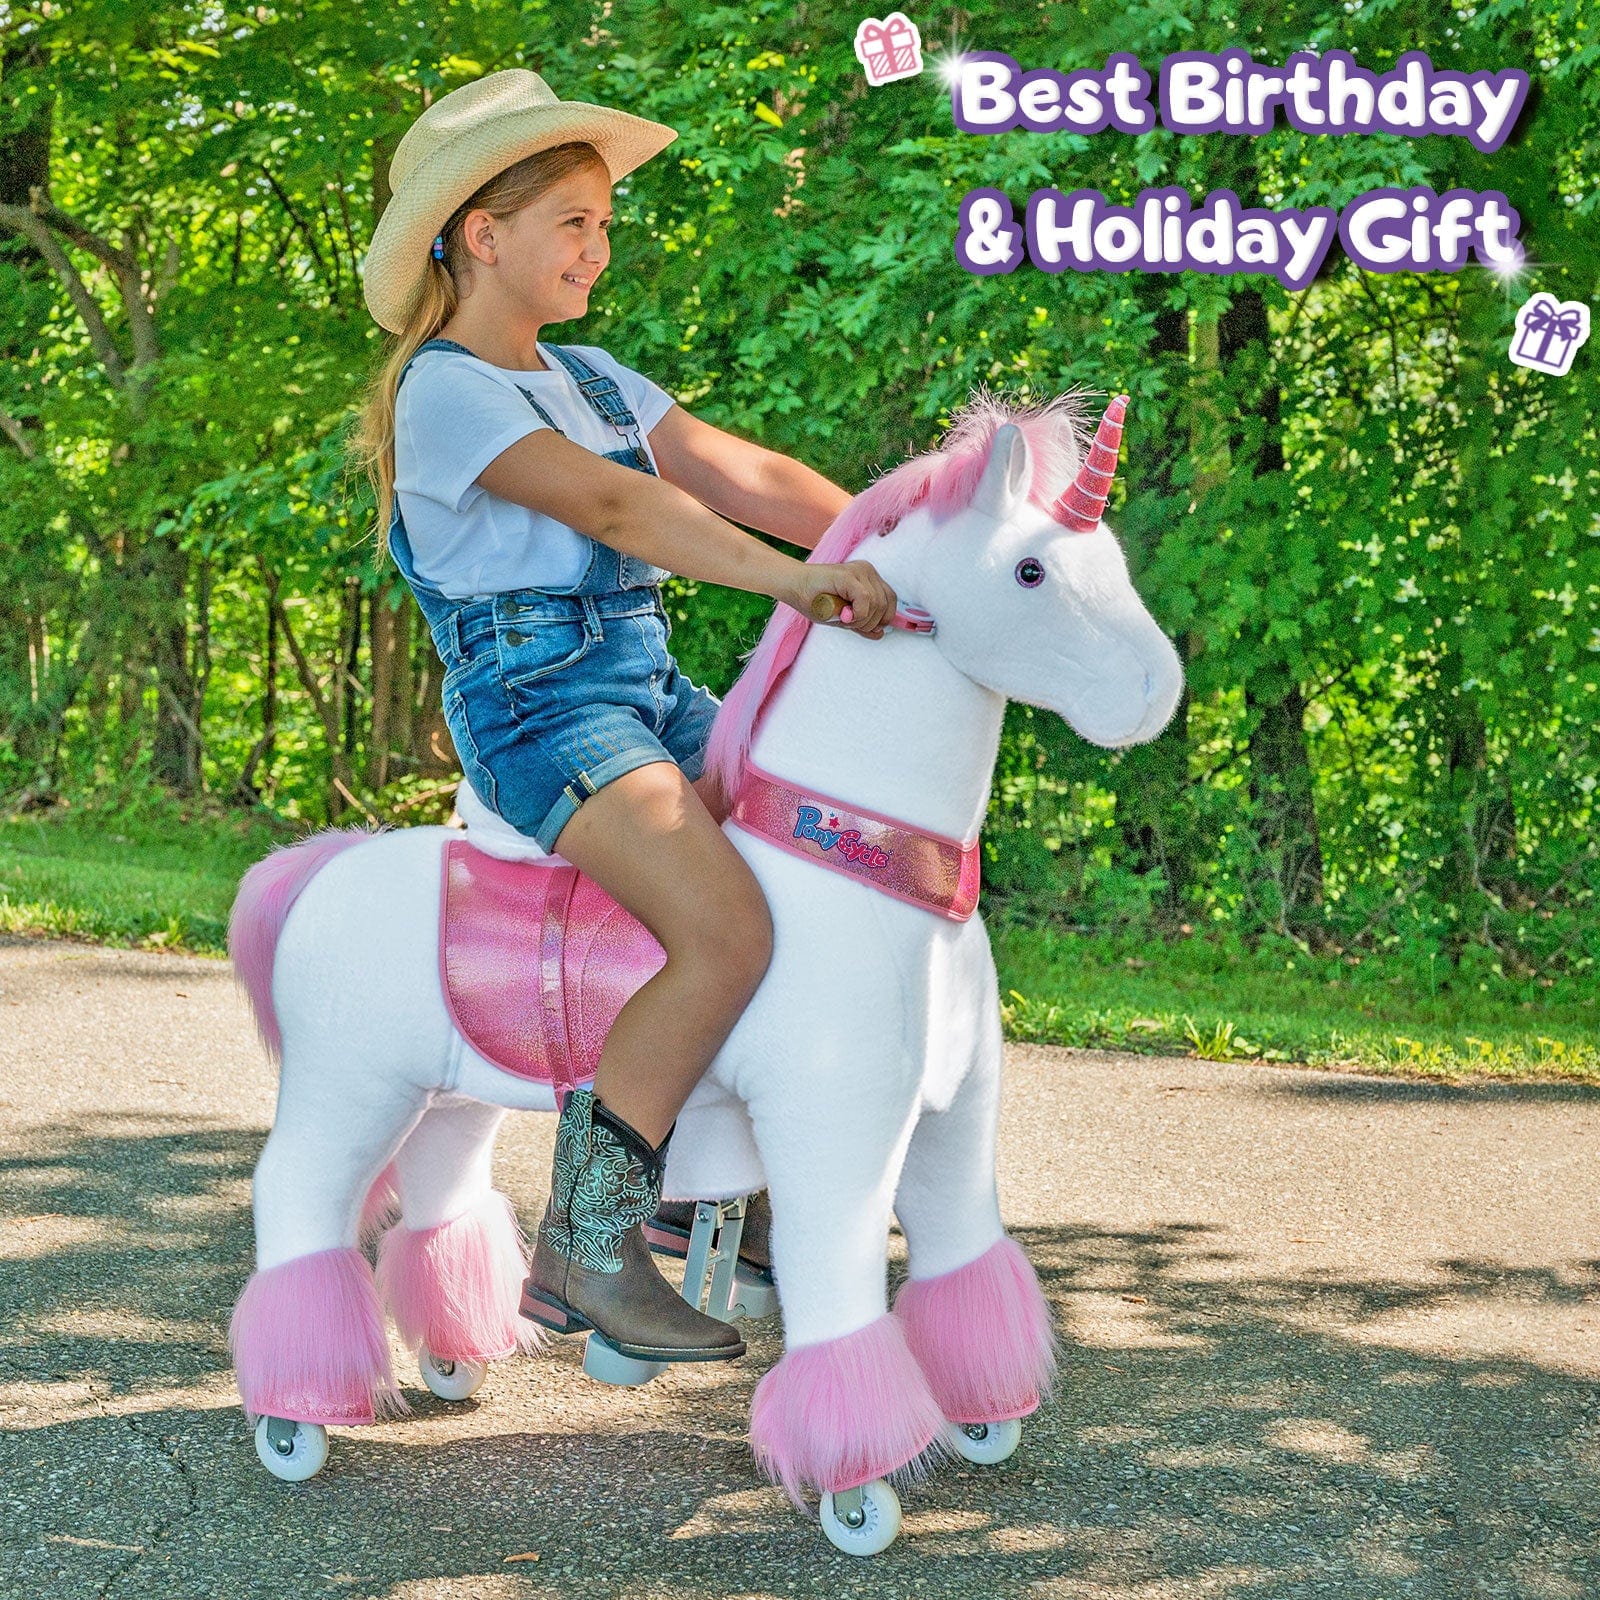 PonyCycle, Inc. ride on toy FREE plush set with purchase of Model U unicorn